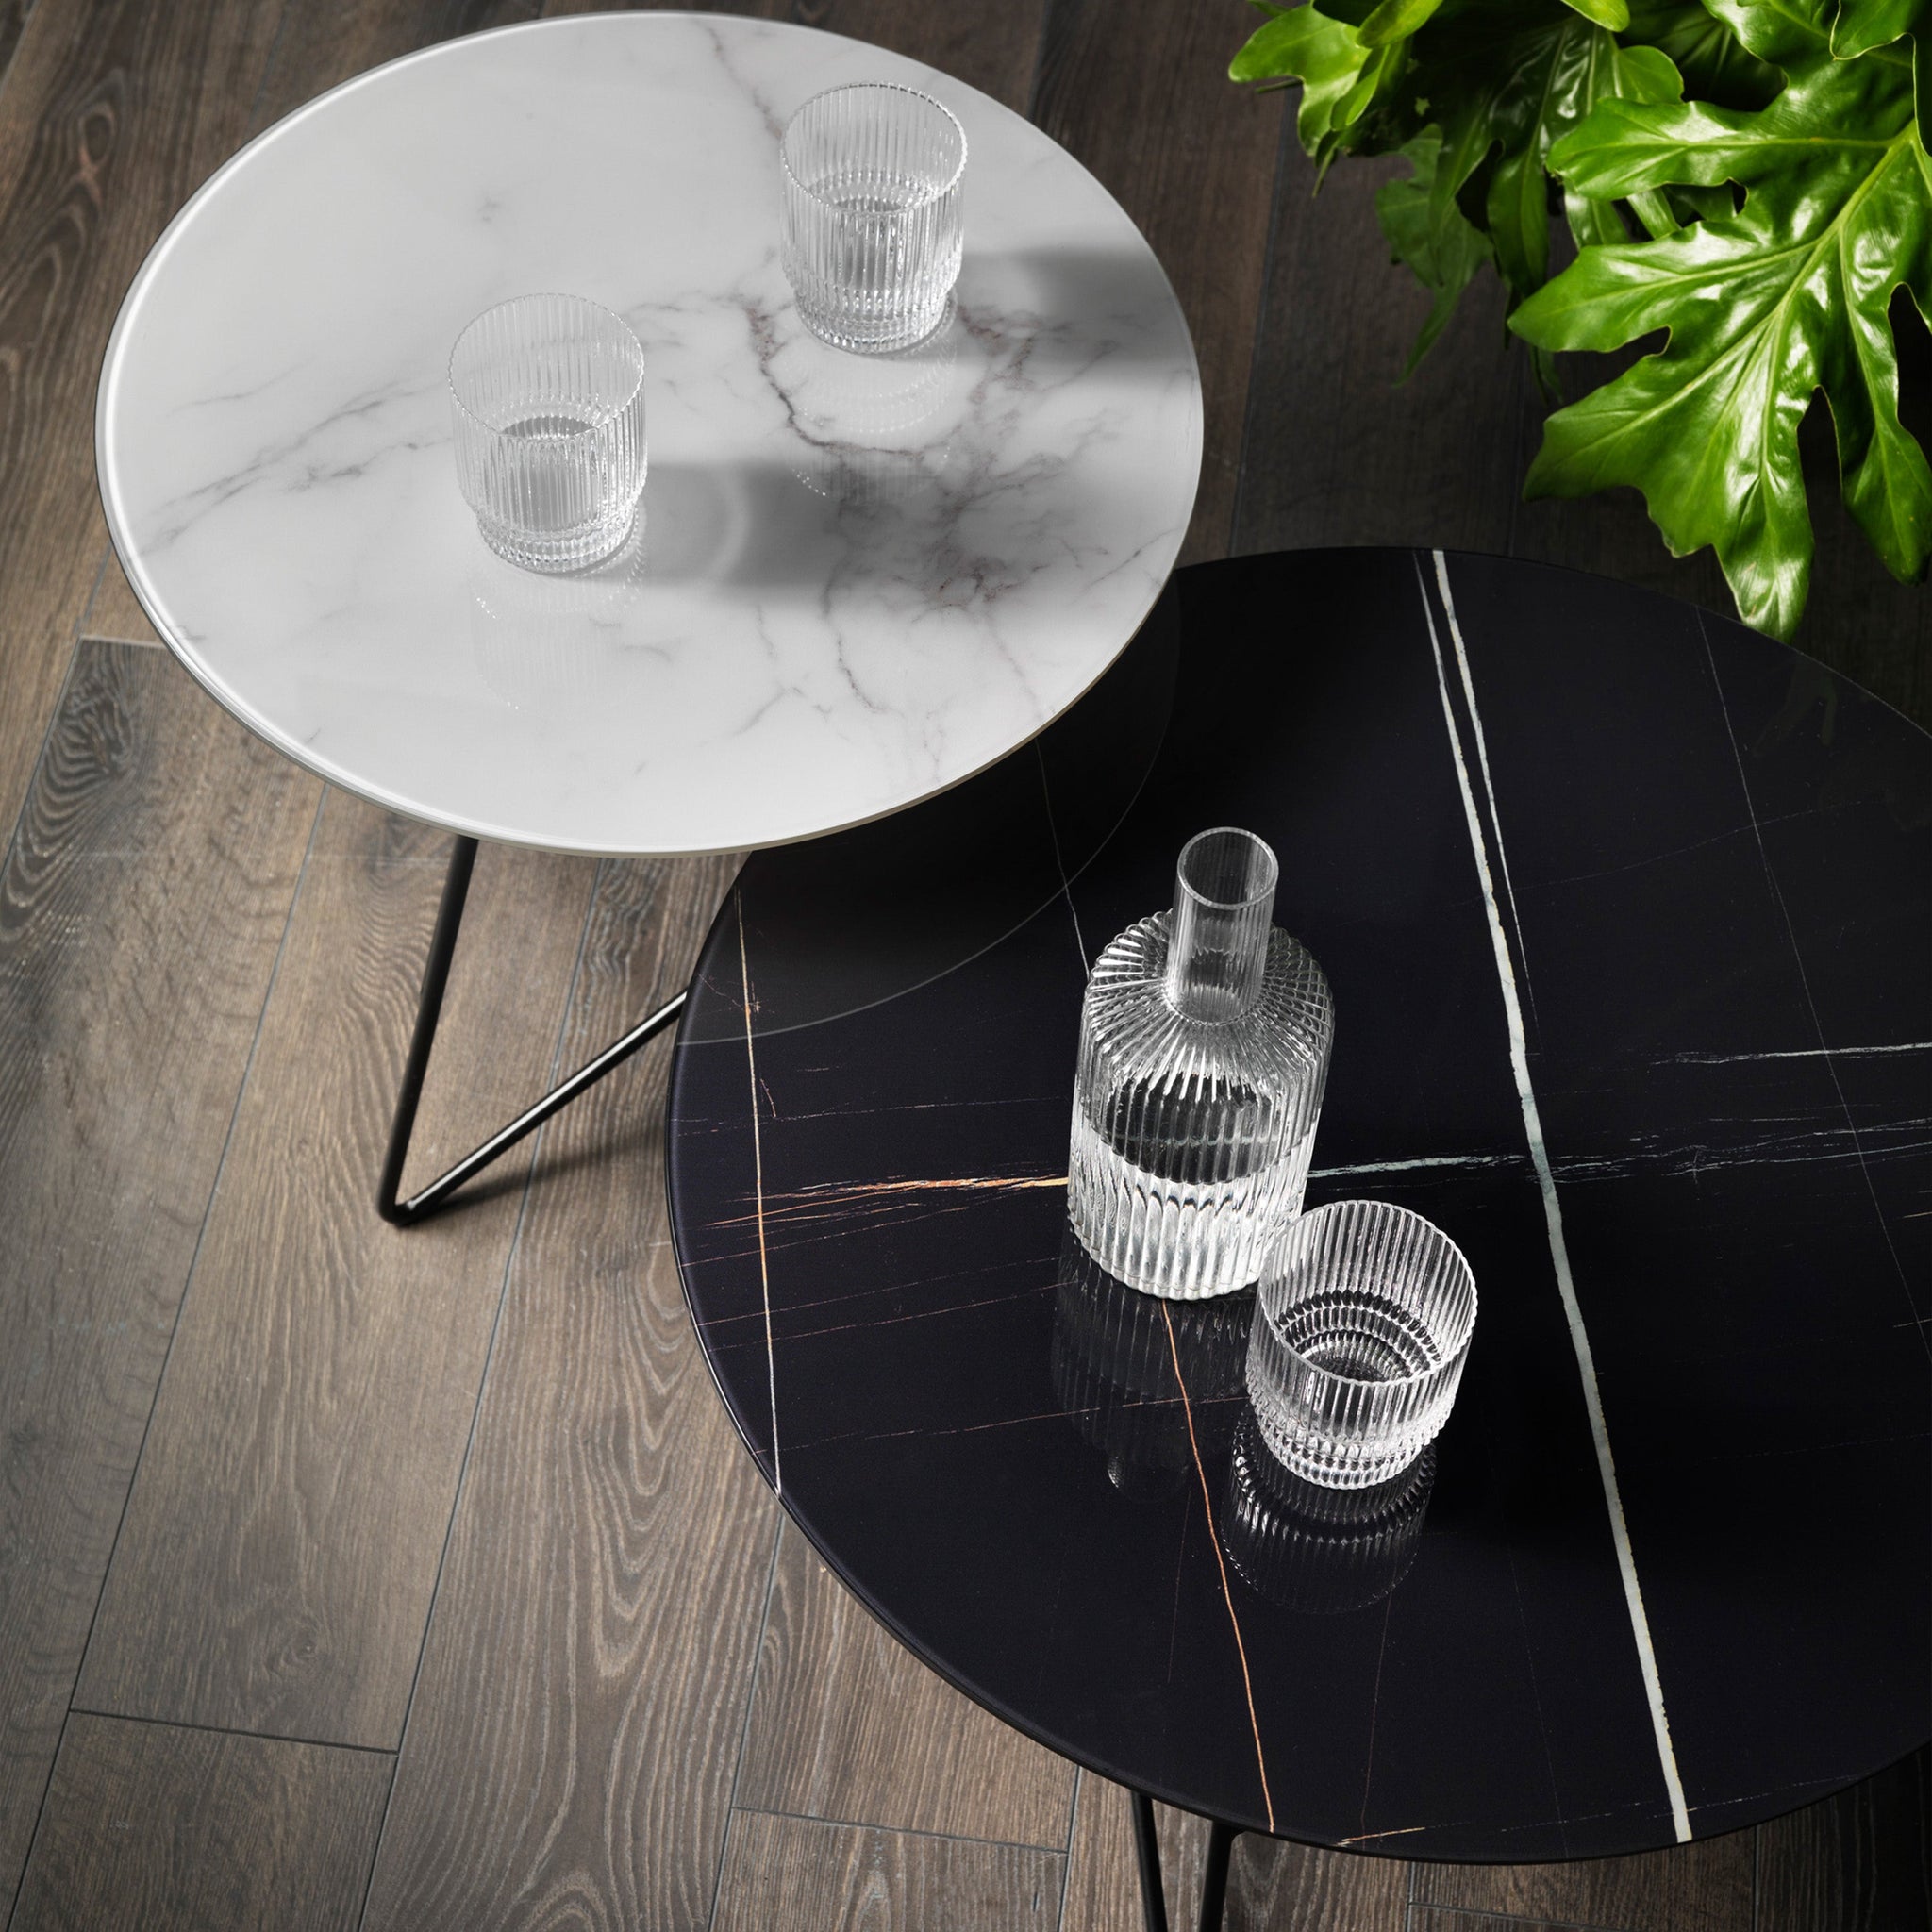 Ermione table basse ronde pour salon avec plateau en verre marbre blanc calacatta h35